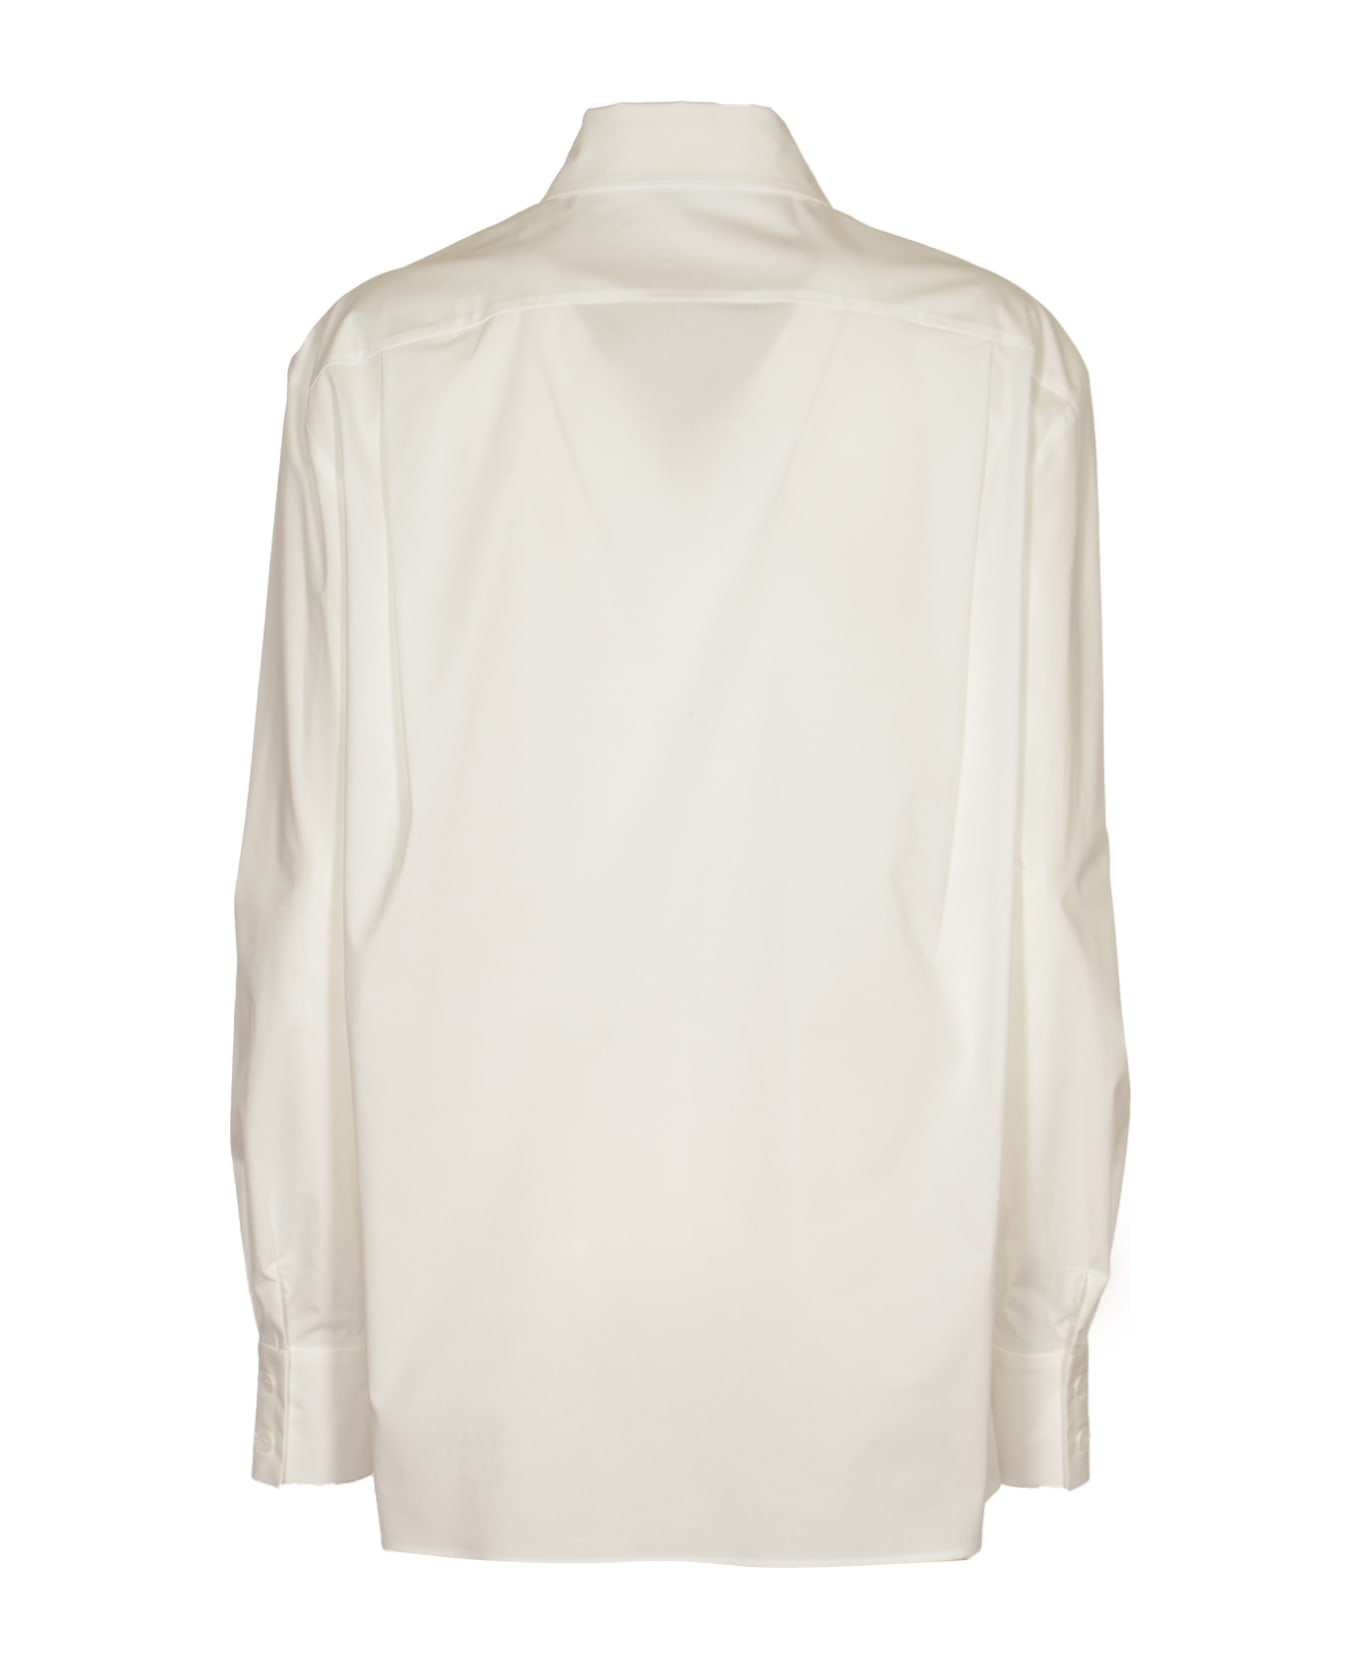 Alberta Ferretti Regular Plain Shirt - White シャツ